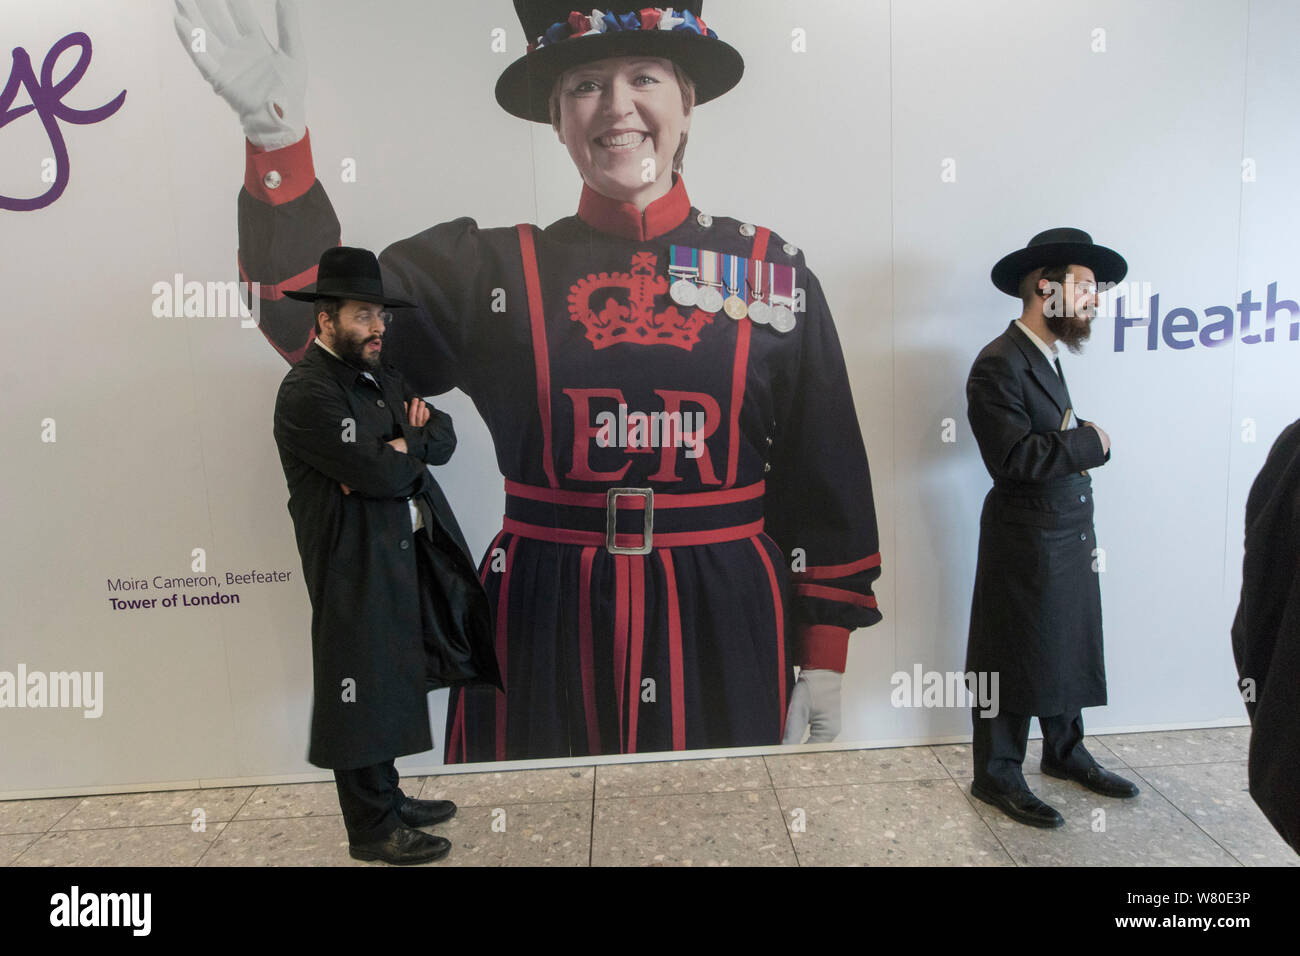 L'aeroporto di Heathrow, Londra, Regno Unito. Un gruppo di Ultra-Orthodox ("Haredi') ebreo pregano gli uomini in attesa di un volo. Una foto di Moira Cameron, beefeater (guardia cerimoniale) presso la Torre di Londra, in background. Foto Stock